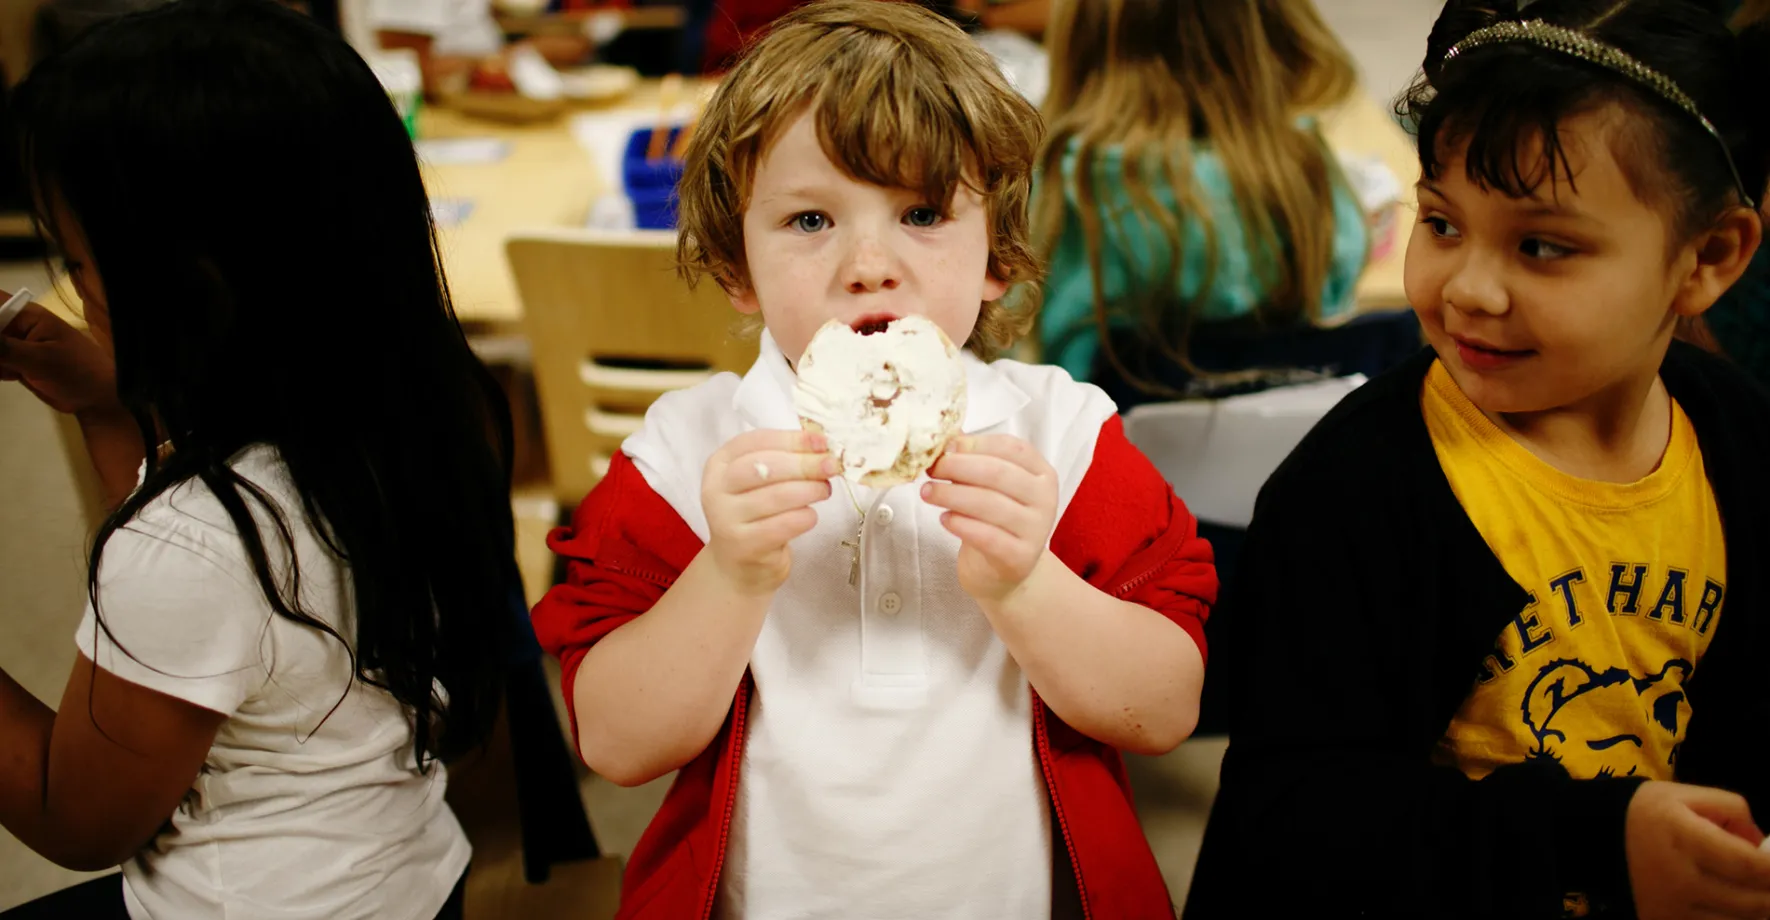 A little boy eating breakfast at school 